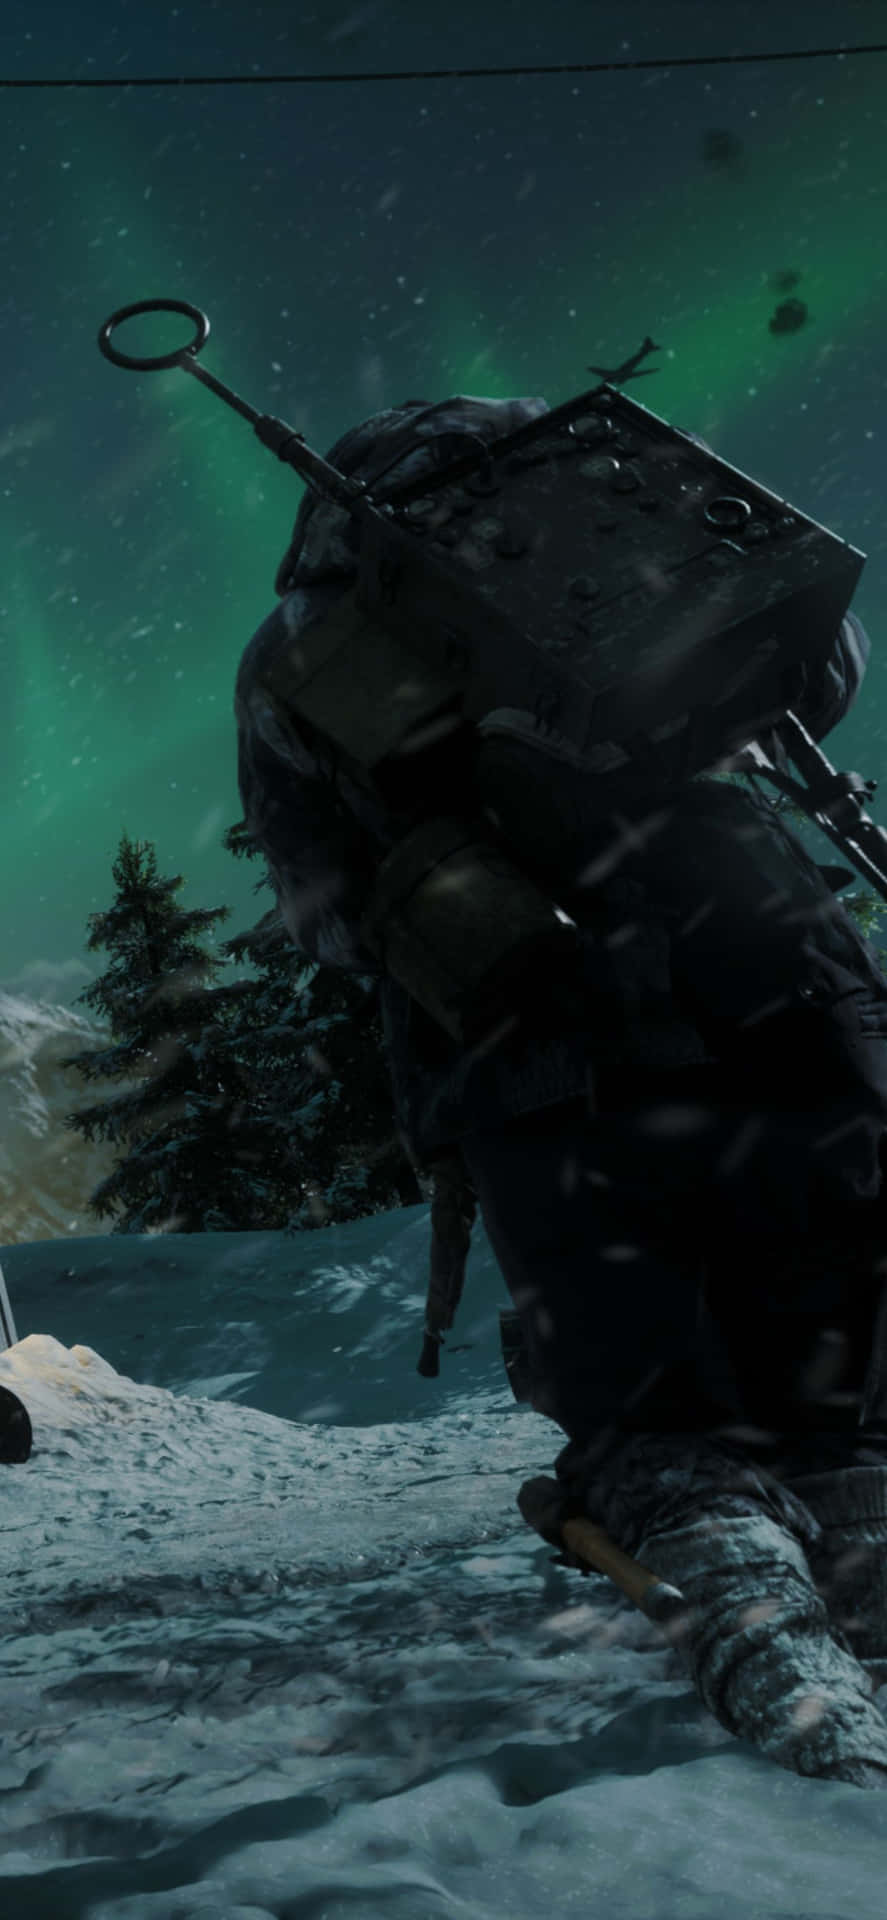 Iphonexs Max Battlefield V Öppnar Snöbakgrund.